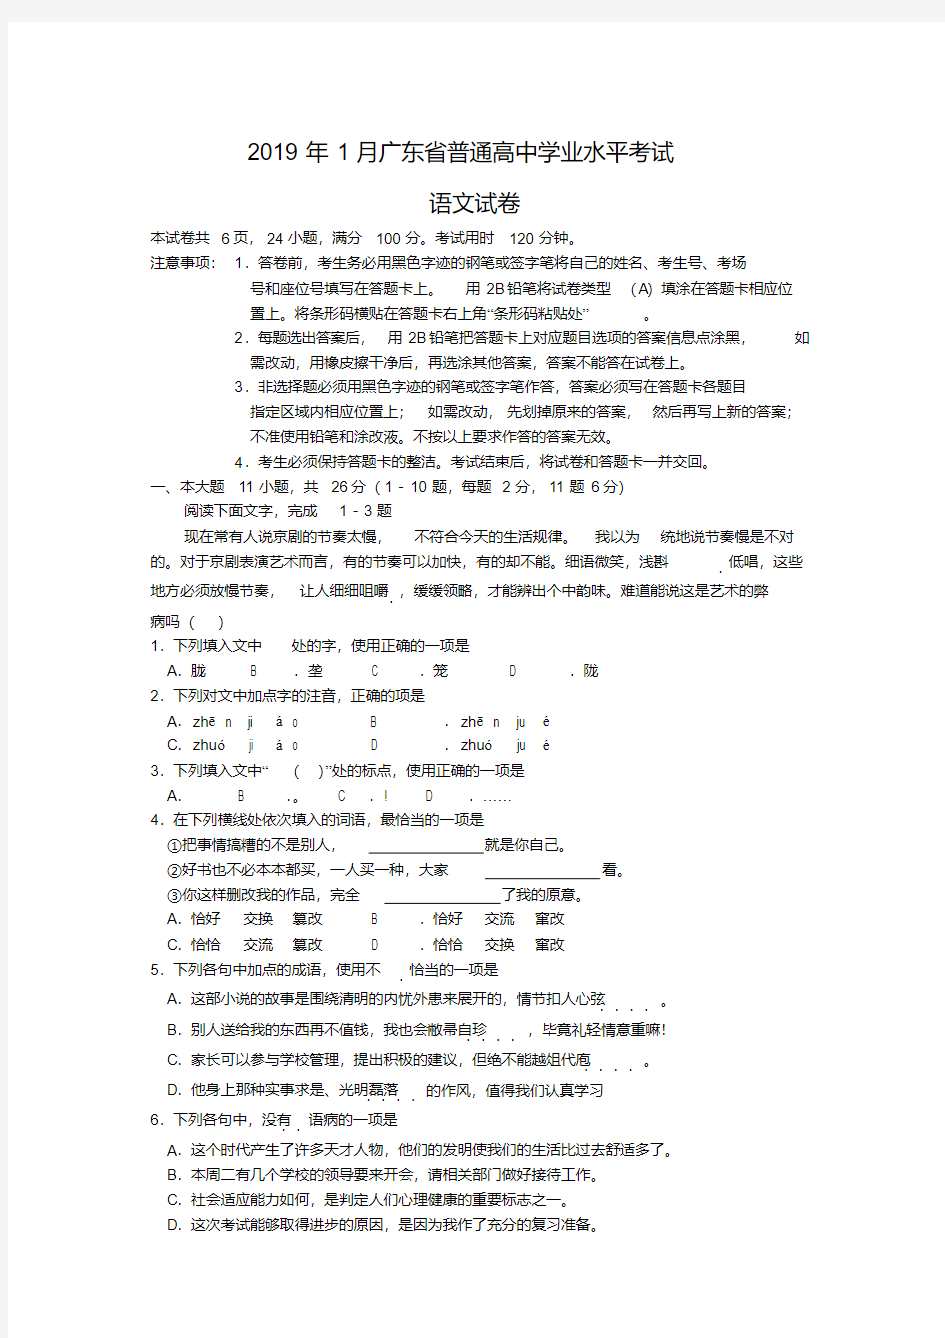 2019年广东省普通高中学业水平考试(春季高考)语文真题试卷及答案1(20200520190419)